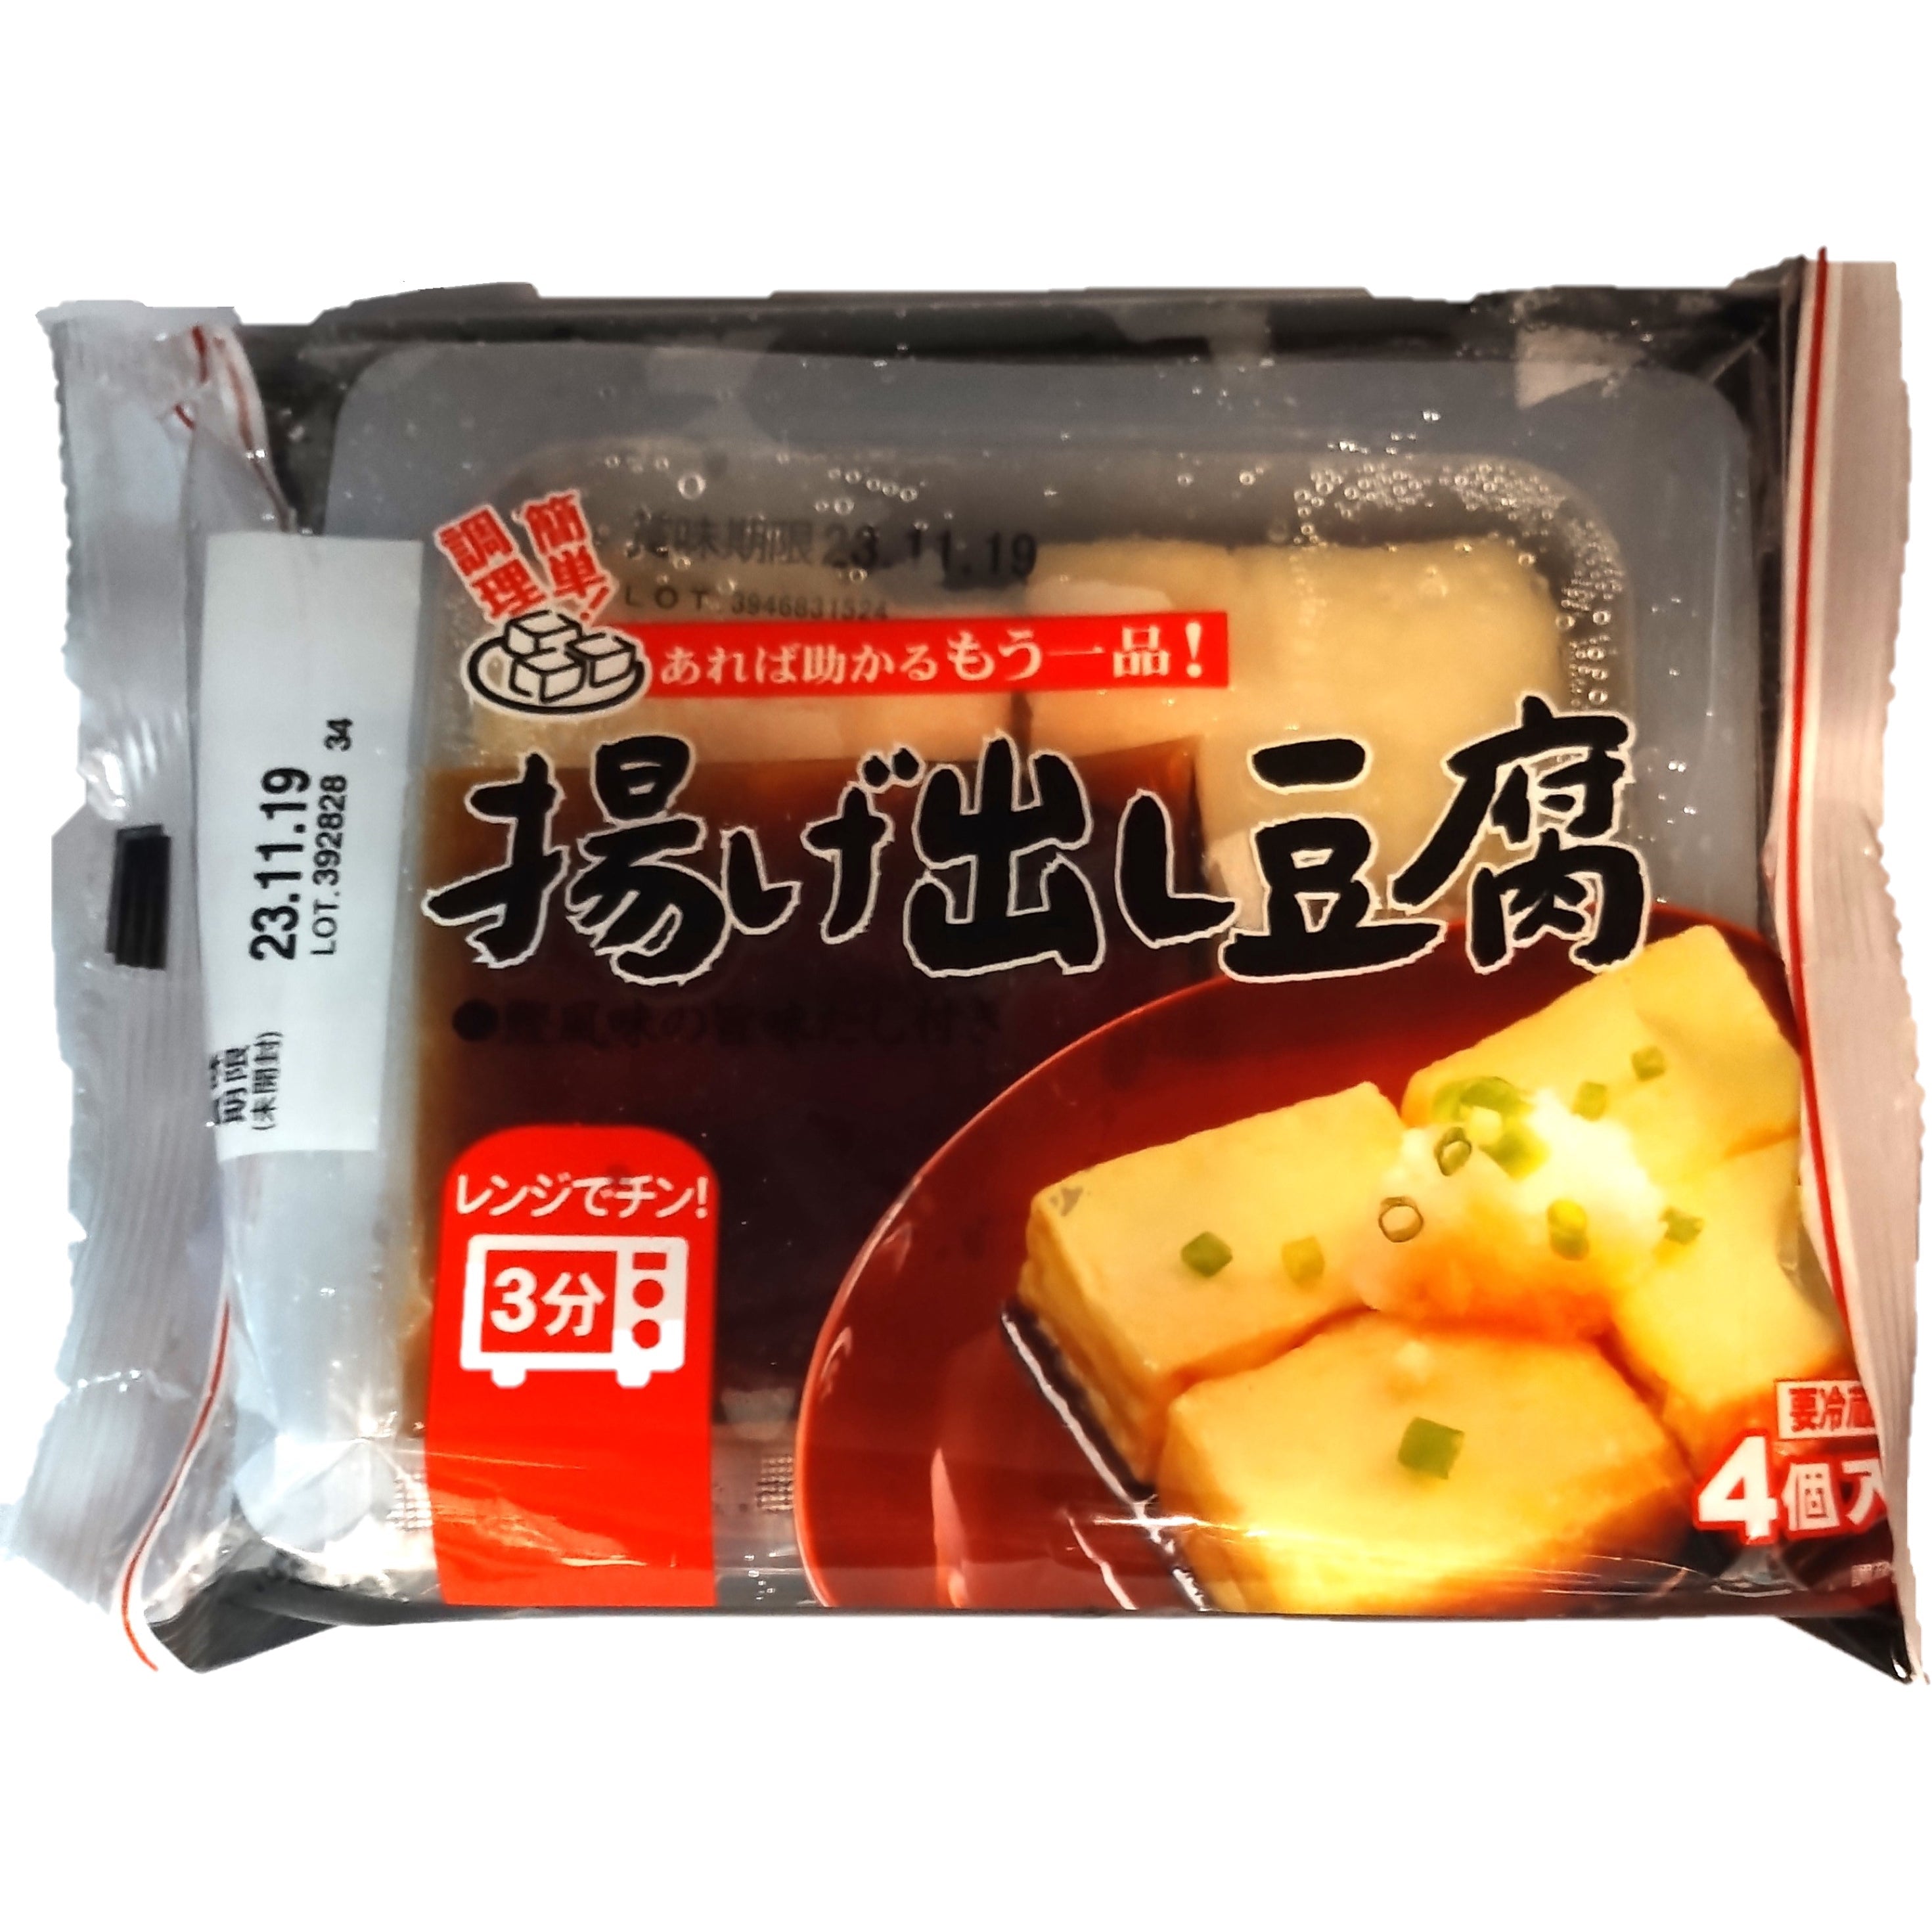 揚げだし豆腐 4個入 – トライアルネットスーパー ビジネス